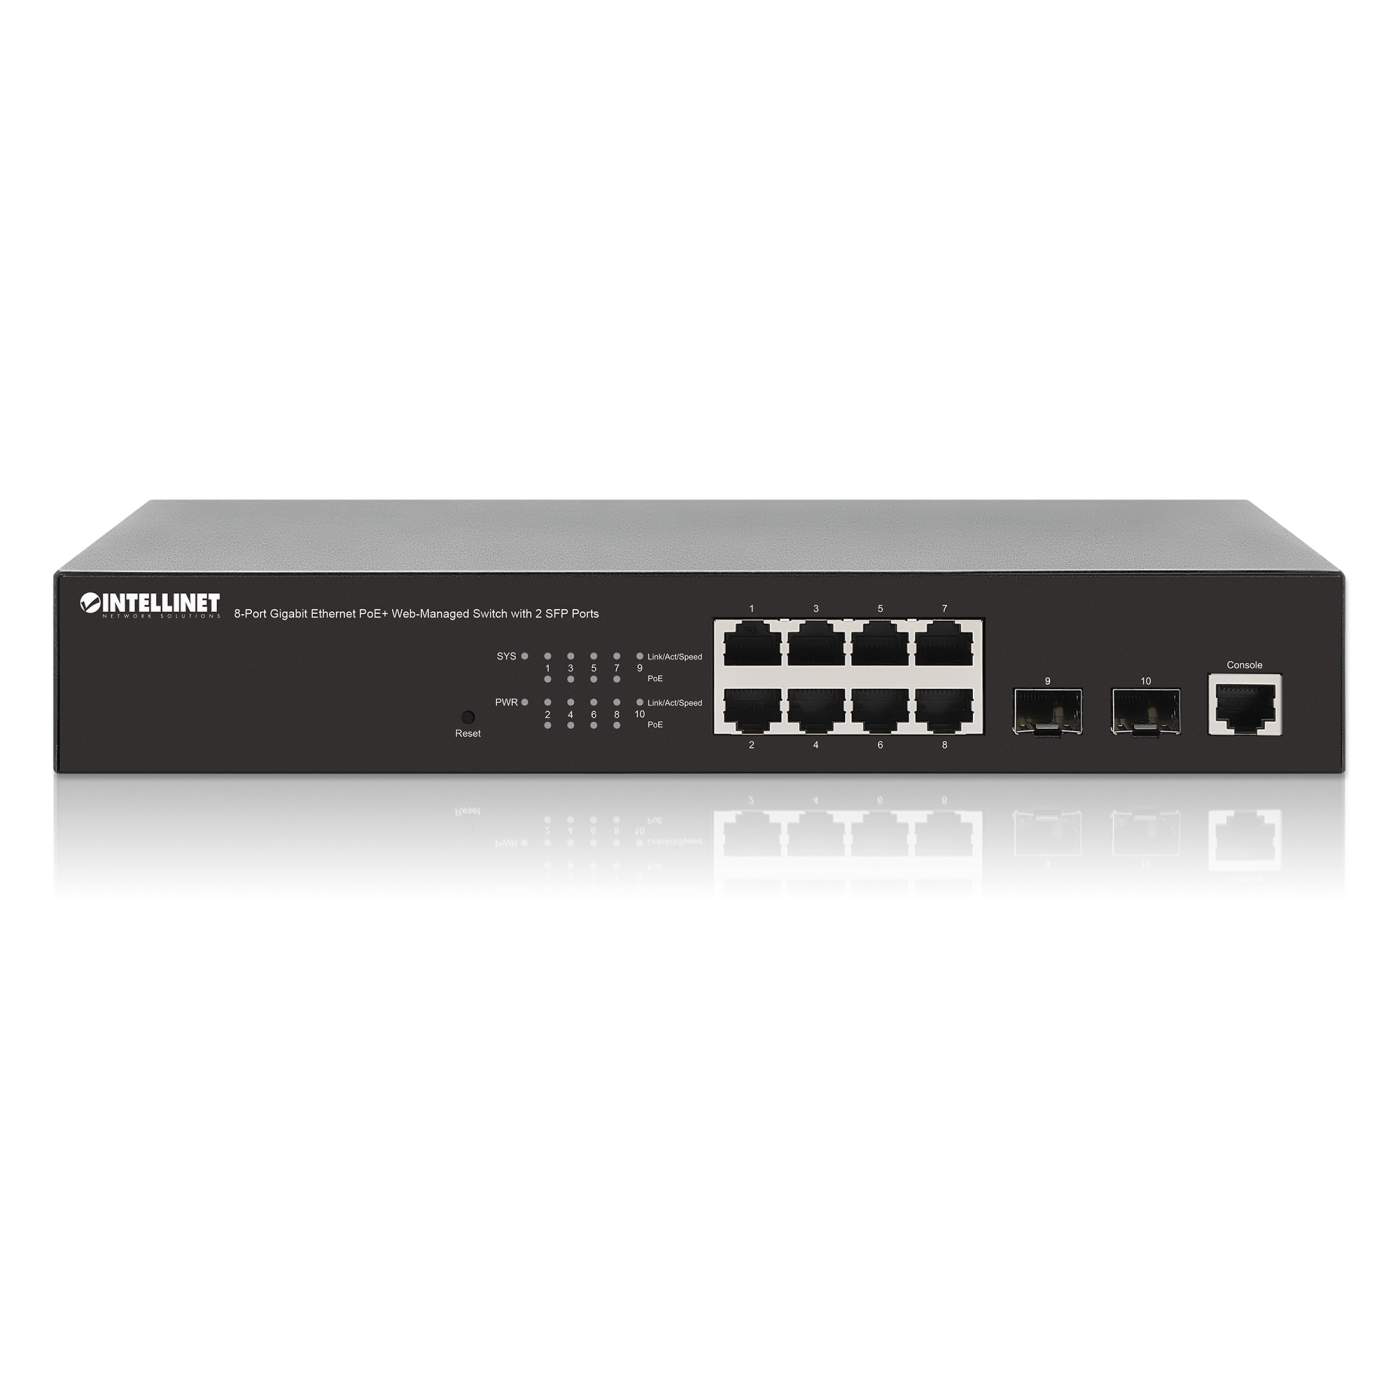 Intellinet 561167 8-Port Gigabit Ethernet PoE+ Web-Managed Switch